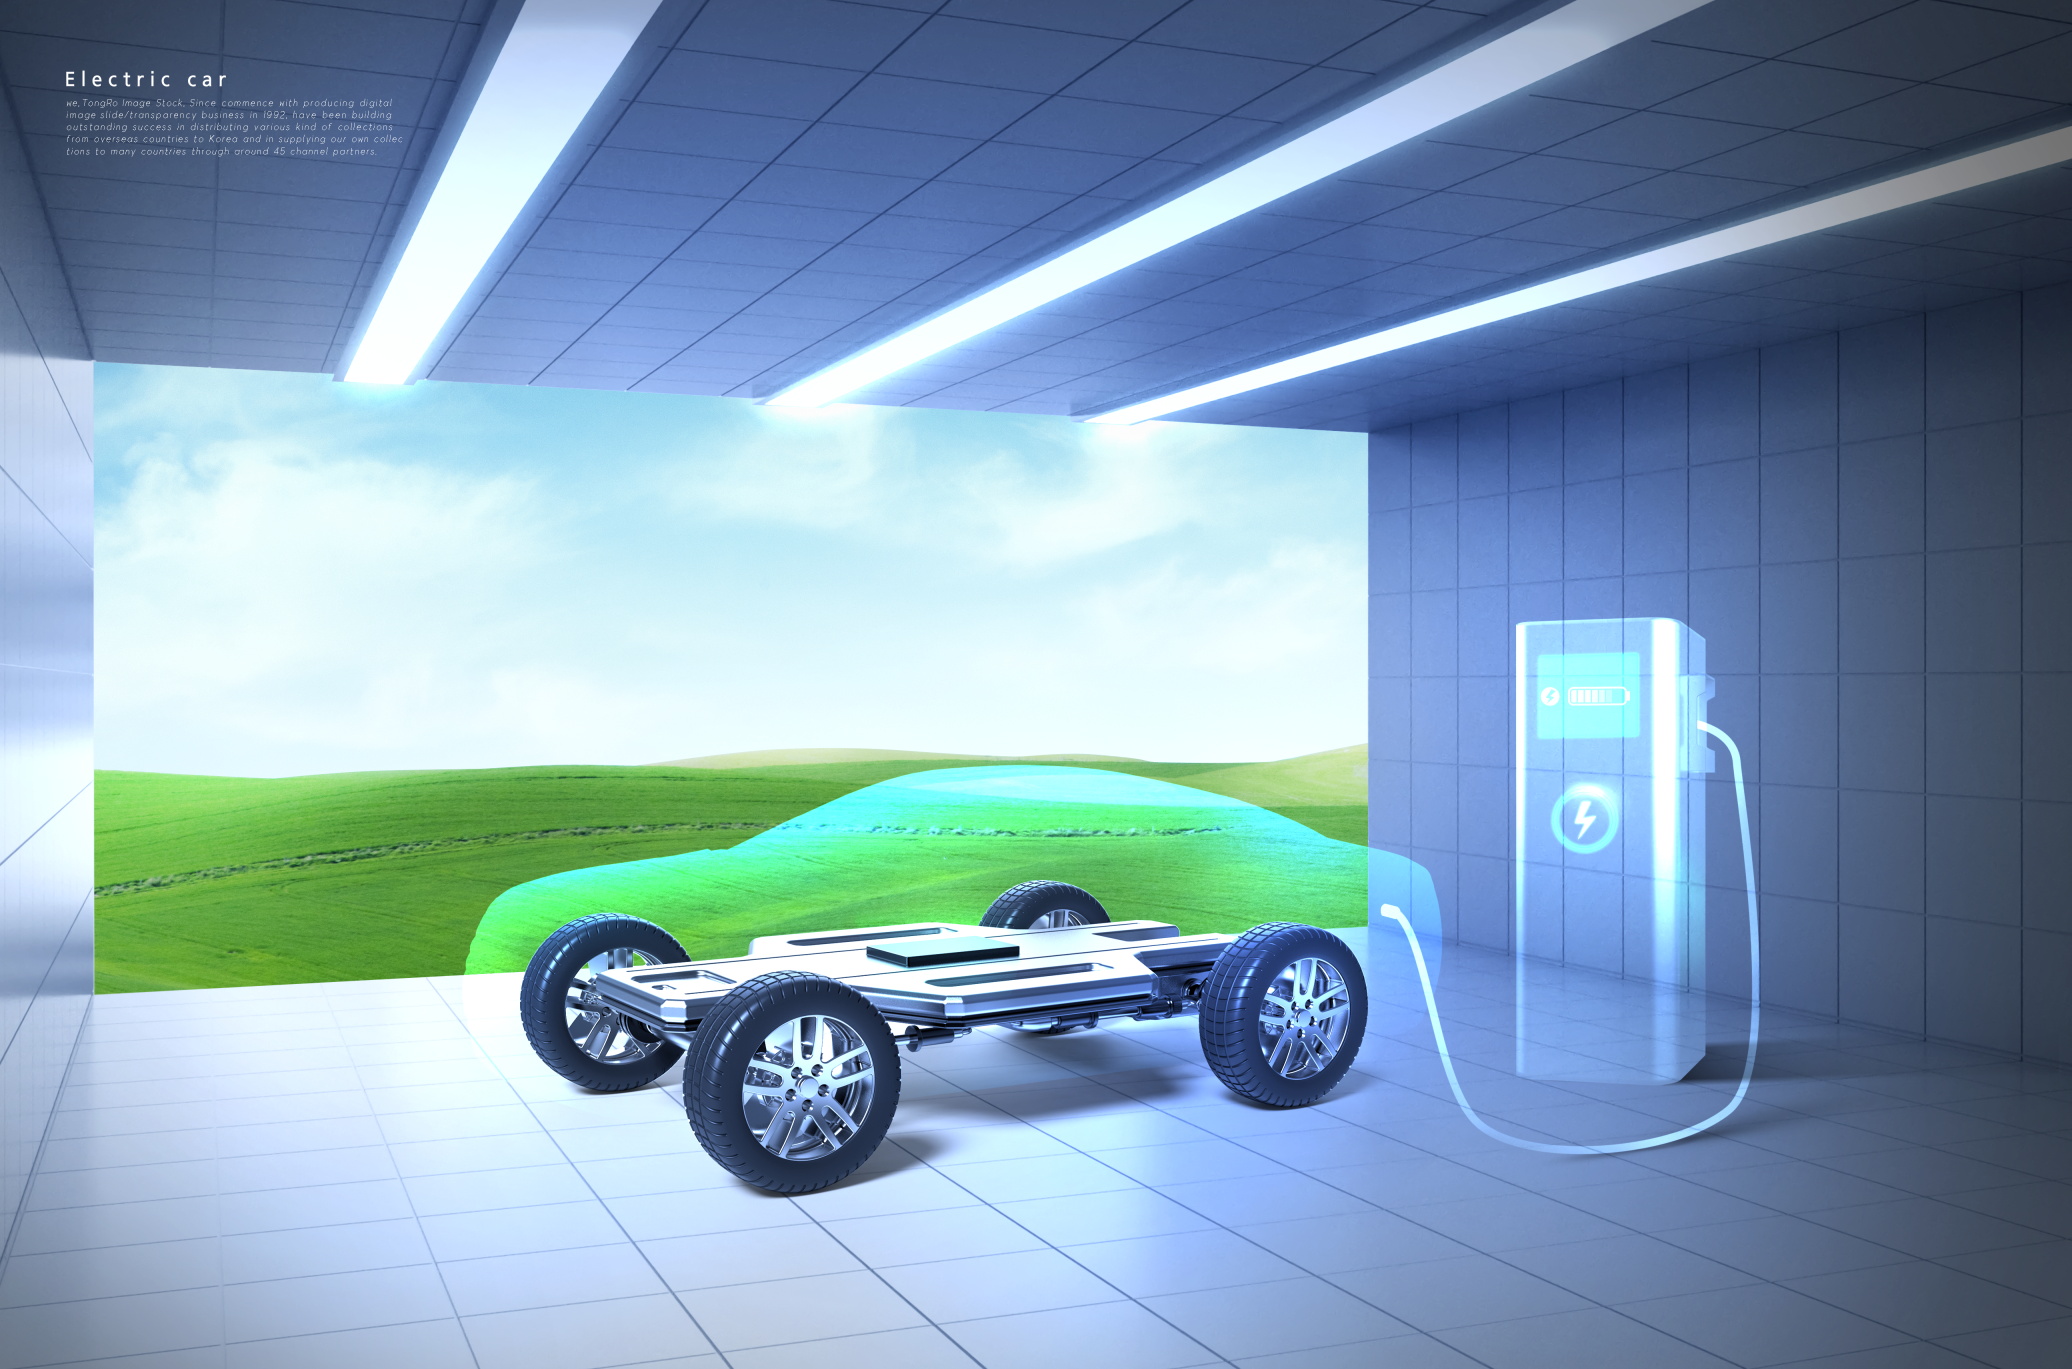 10款时尚创意环保科技新能源电动汽车海报设计psd模板素材 new energy